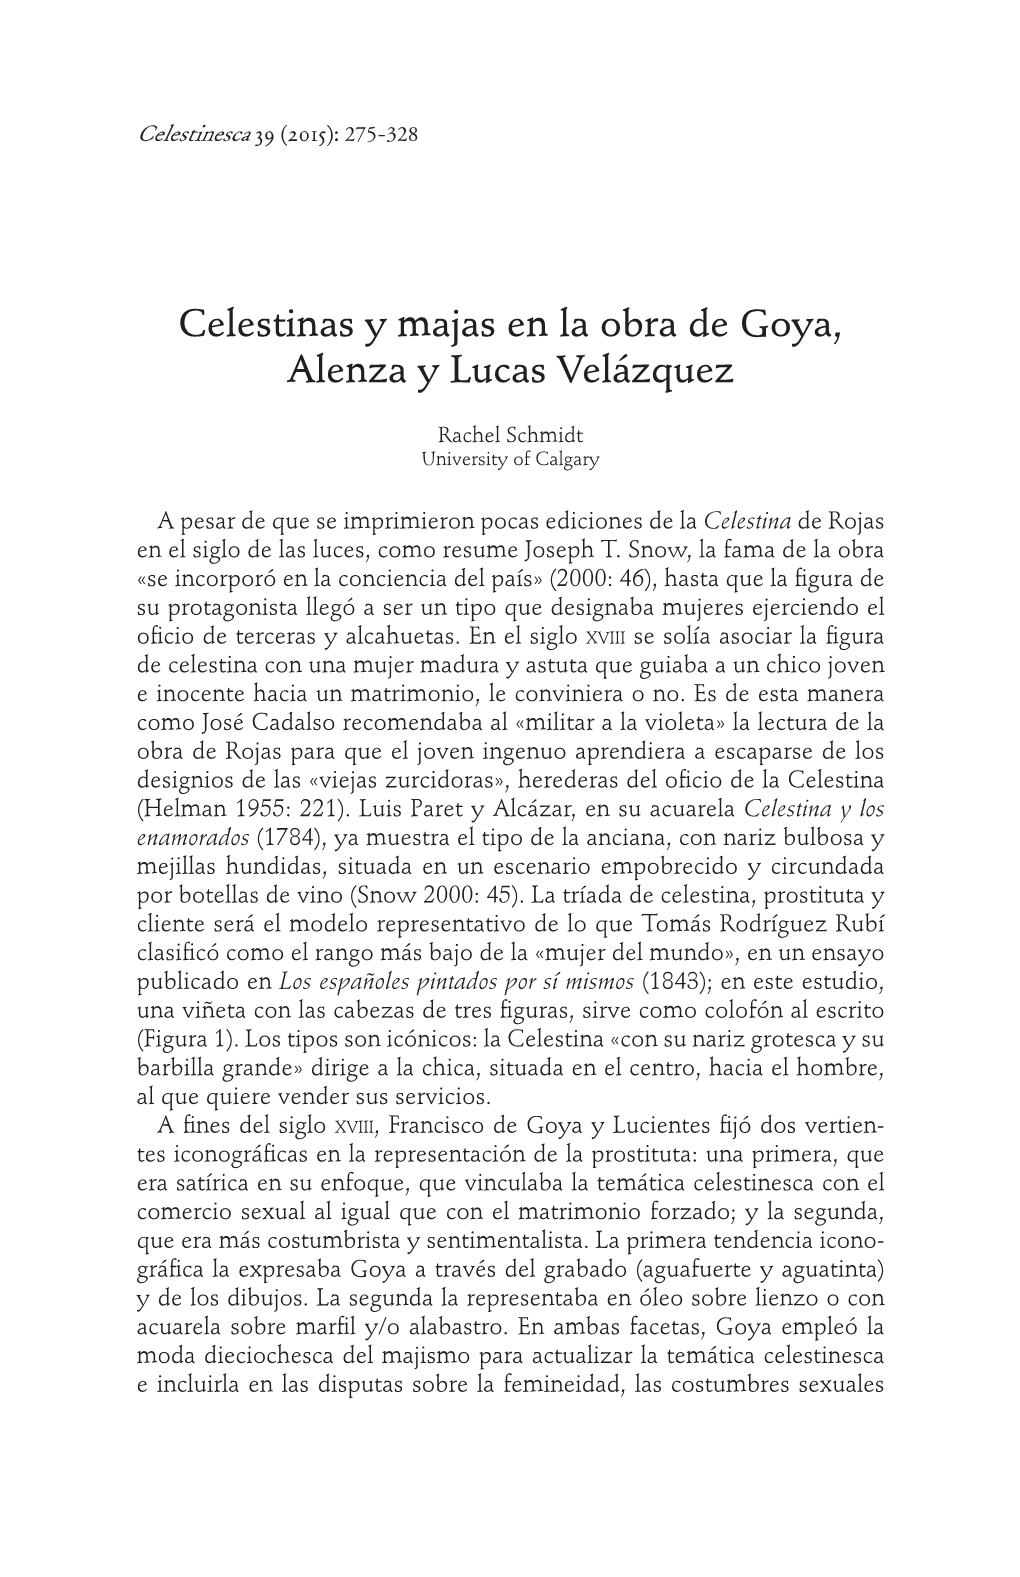 Celestinas Y Majas En La Obra De Goya, Alenza Y Lucas Velázquez